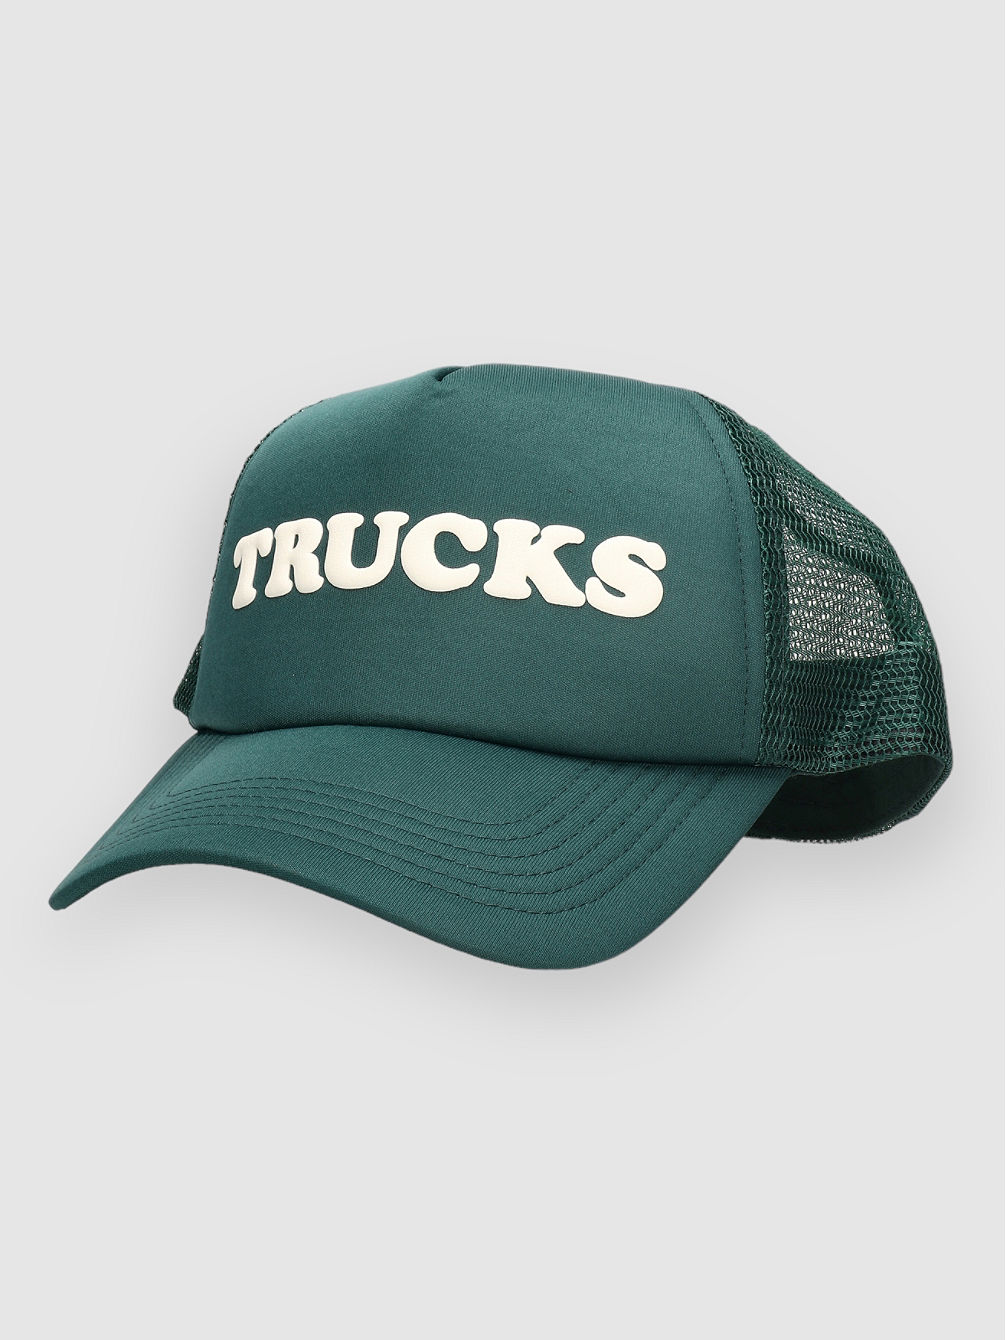 Trucks Trucker Cap